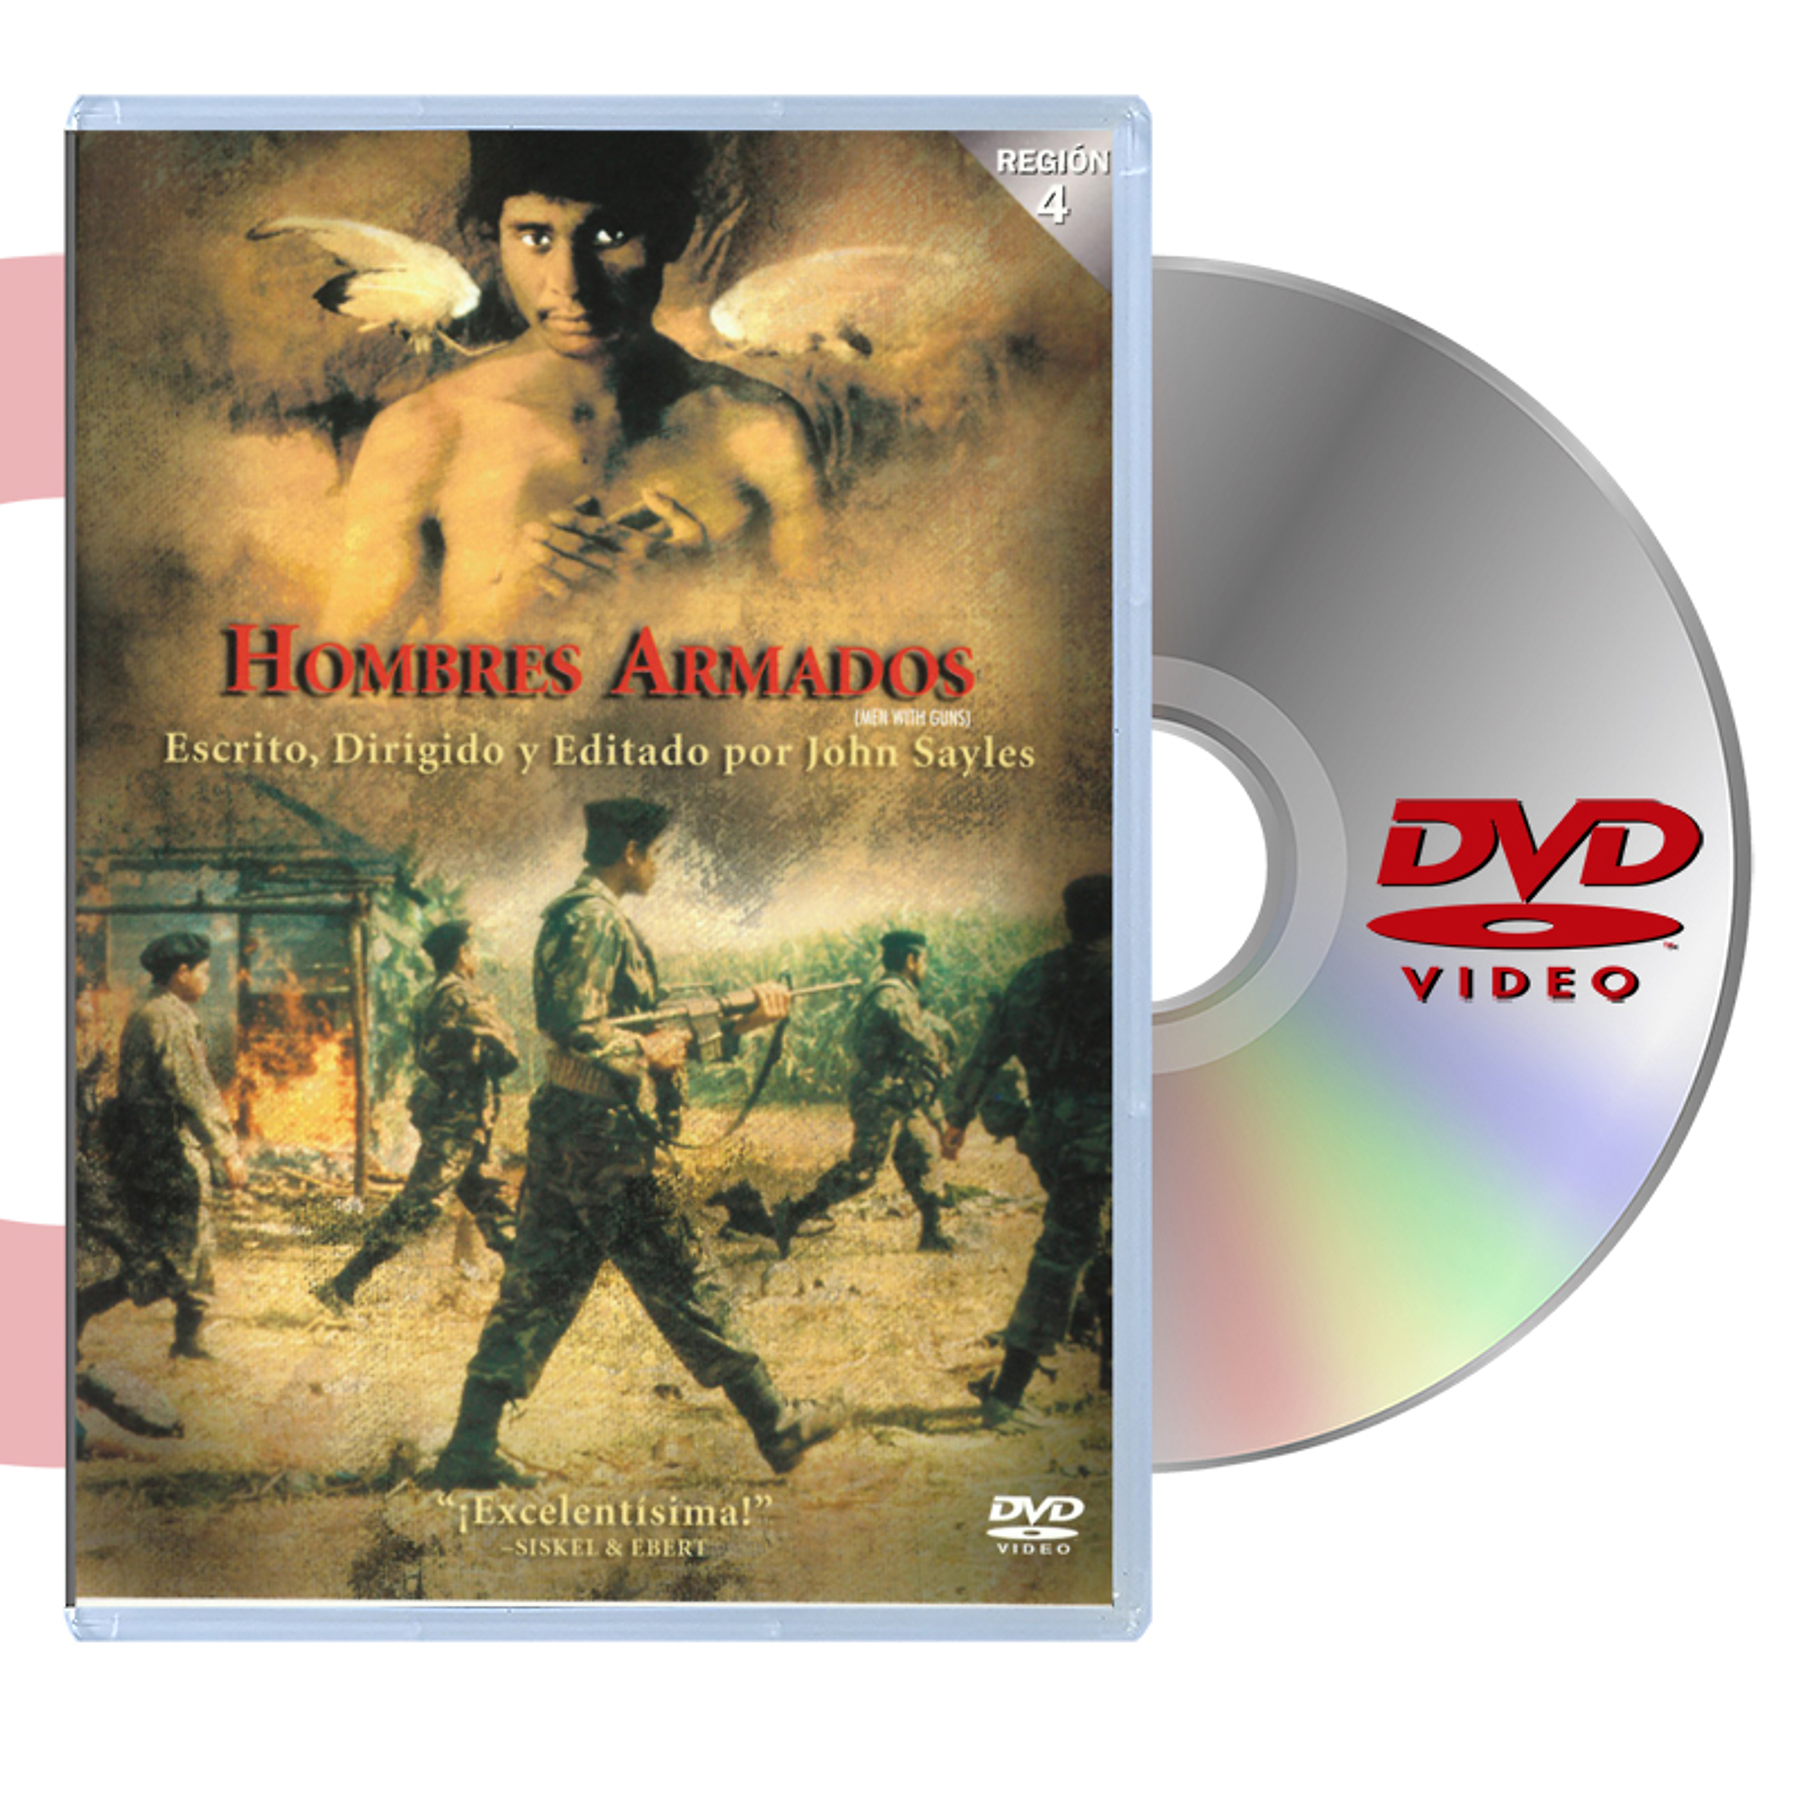 DVD HOMBRES ARMADOS